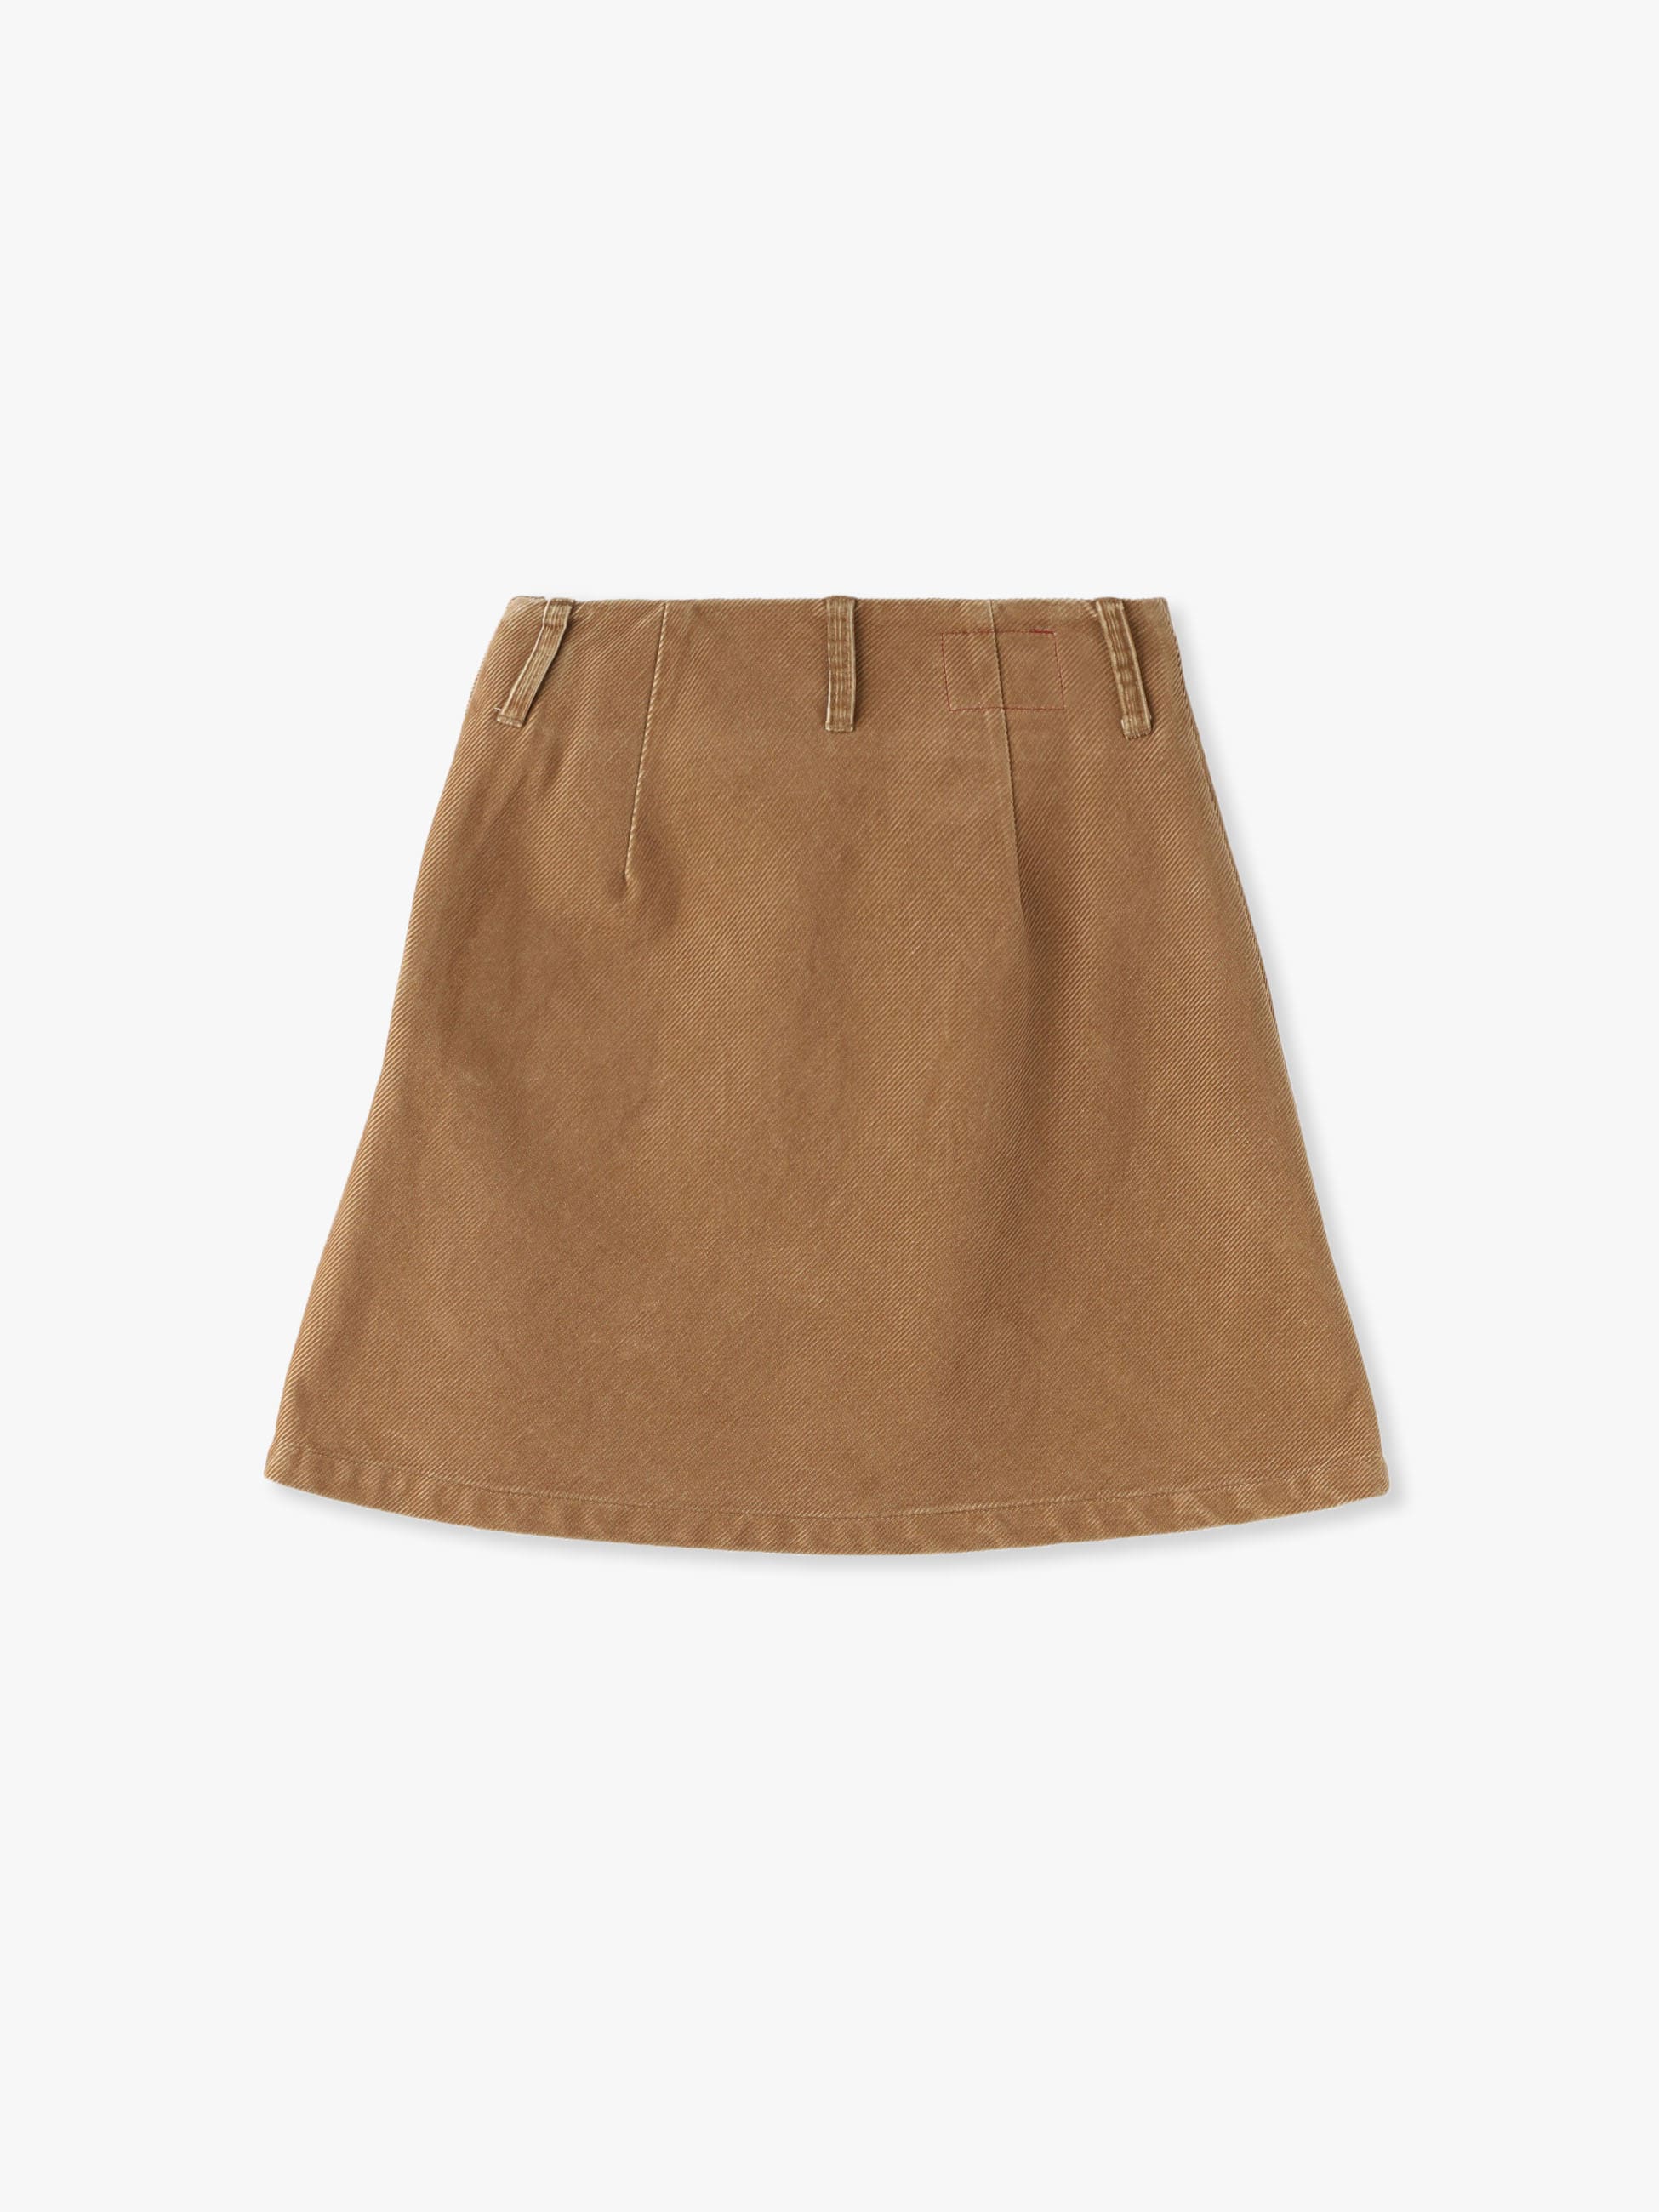 RH skirt